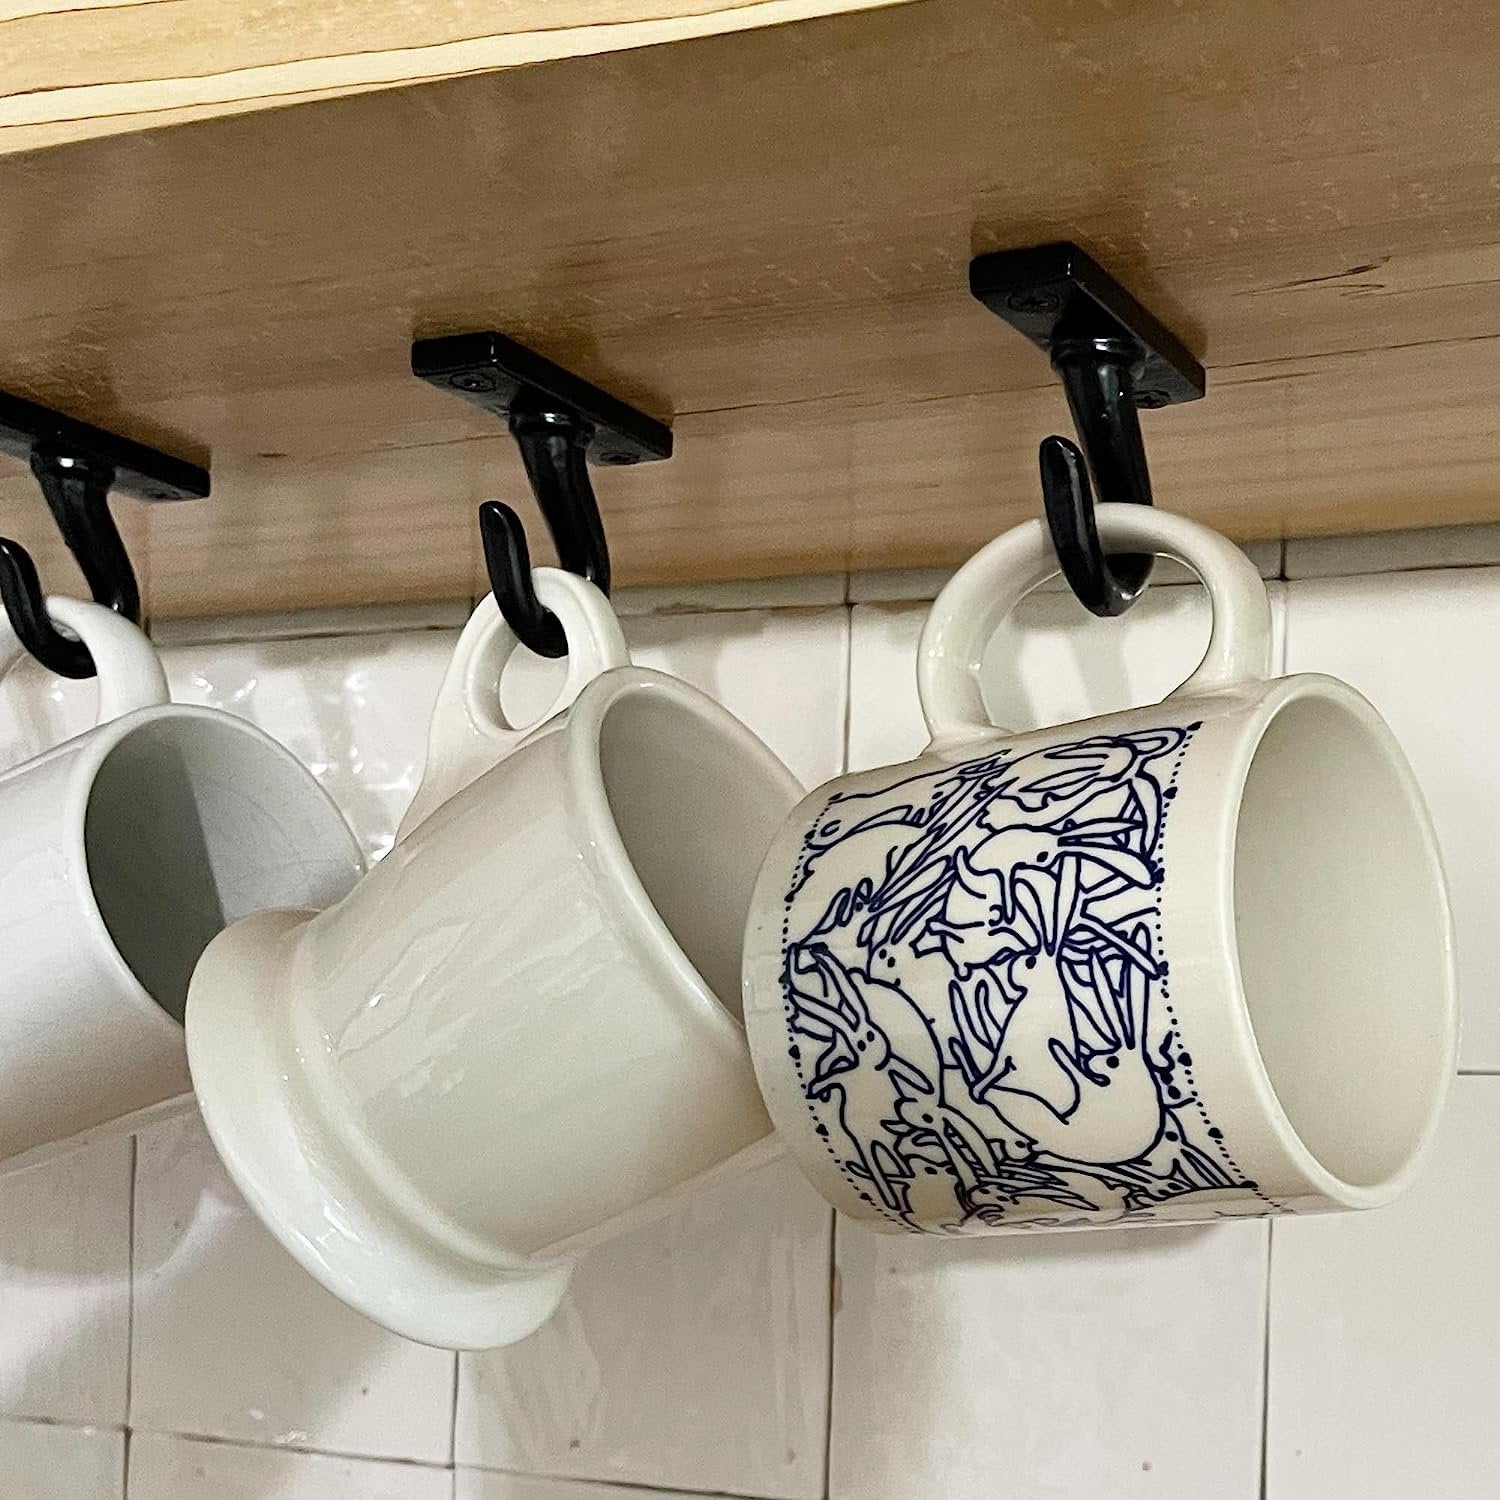 ANTIQUE HARDWARE DEPOT - 2.5”-Under Cabinet or Shelf Coffee Mug Holder 